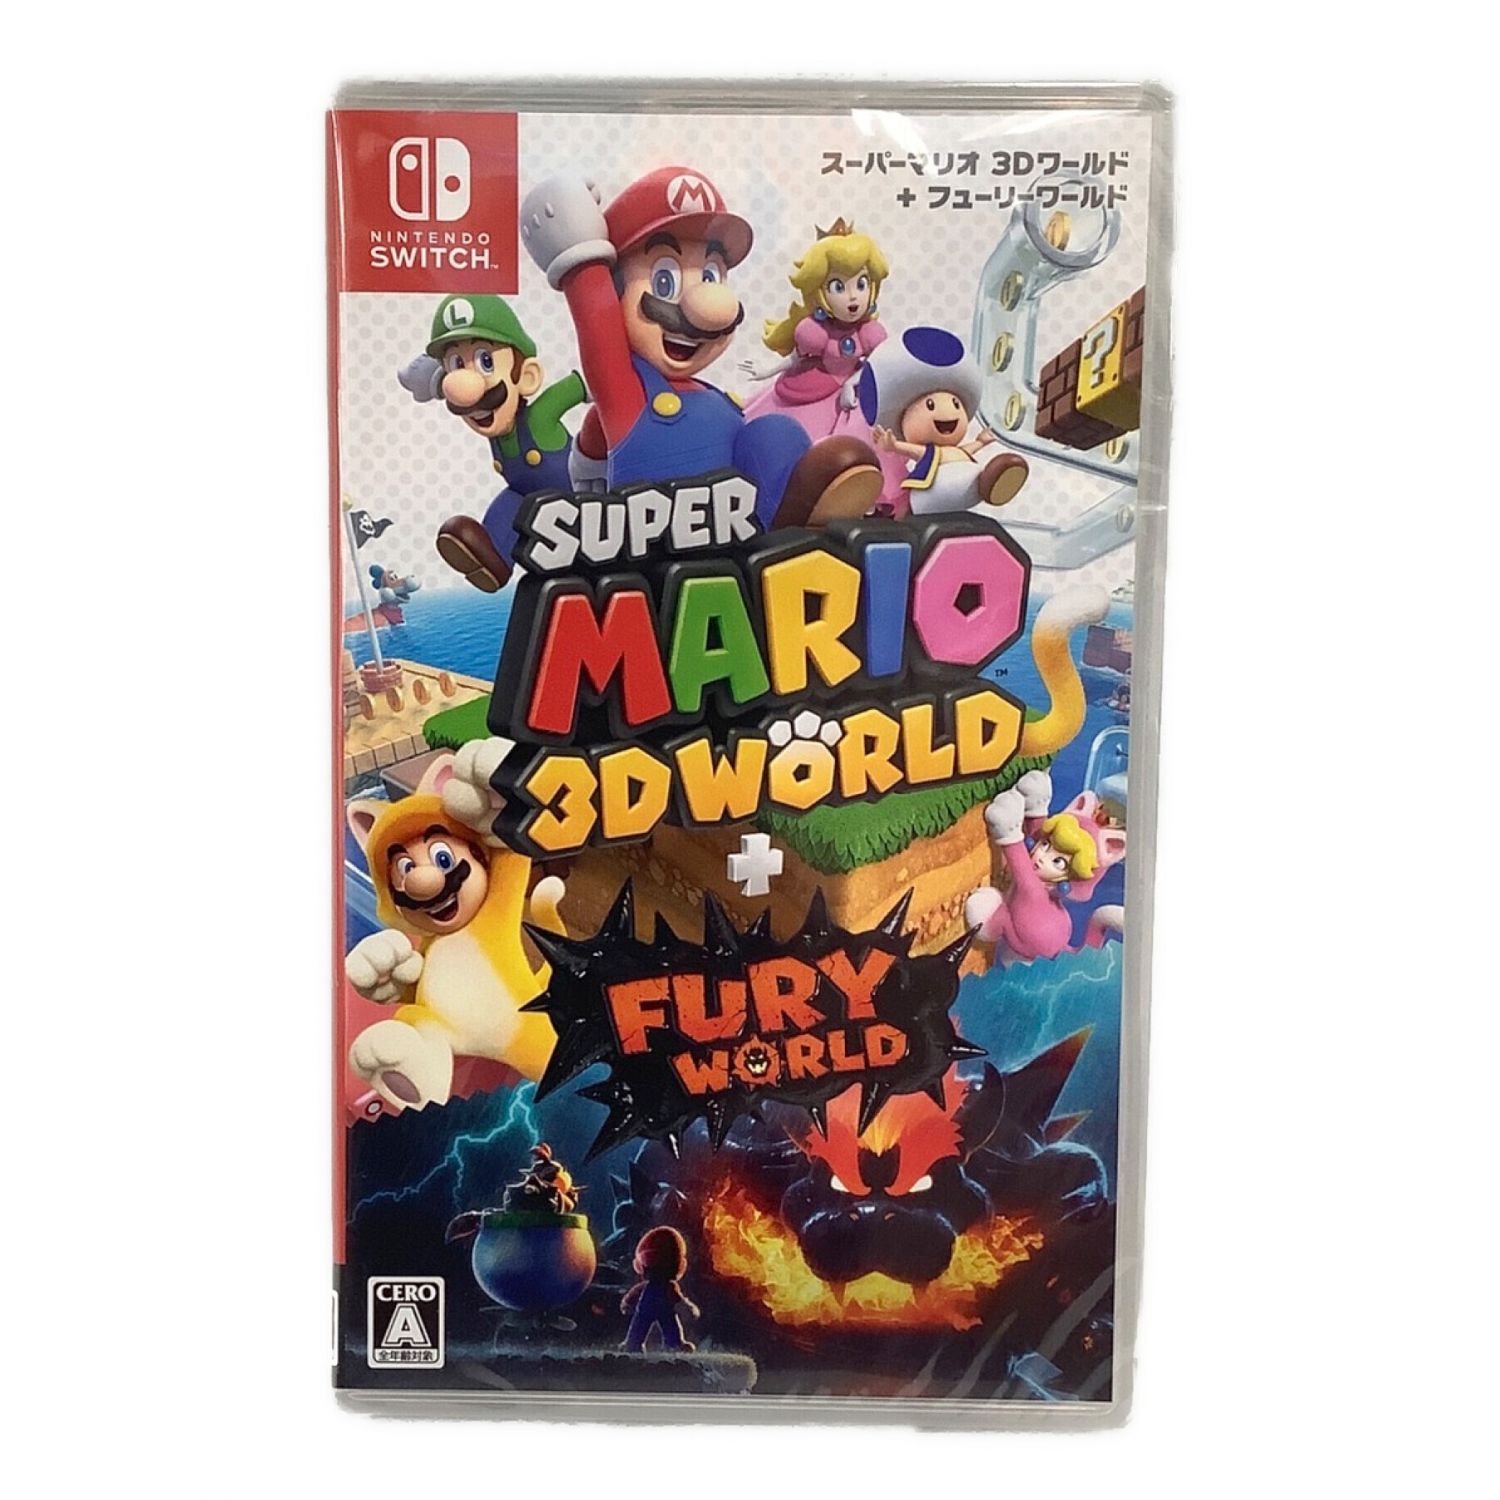 Nintendo Switch用ソフト スーパーマリオ 3Dワールド + フューリー